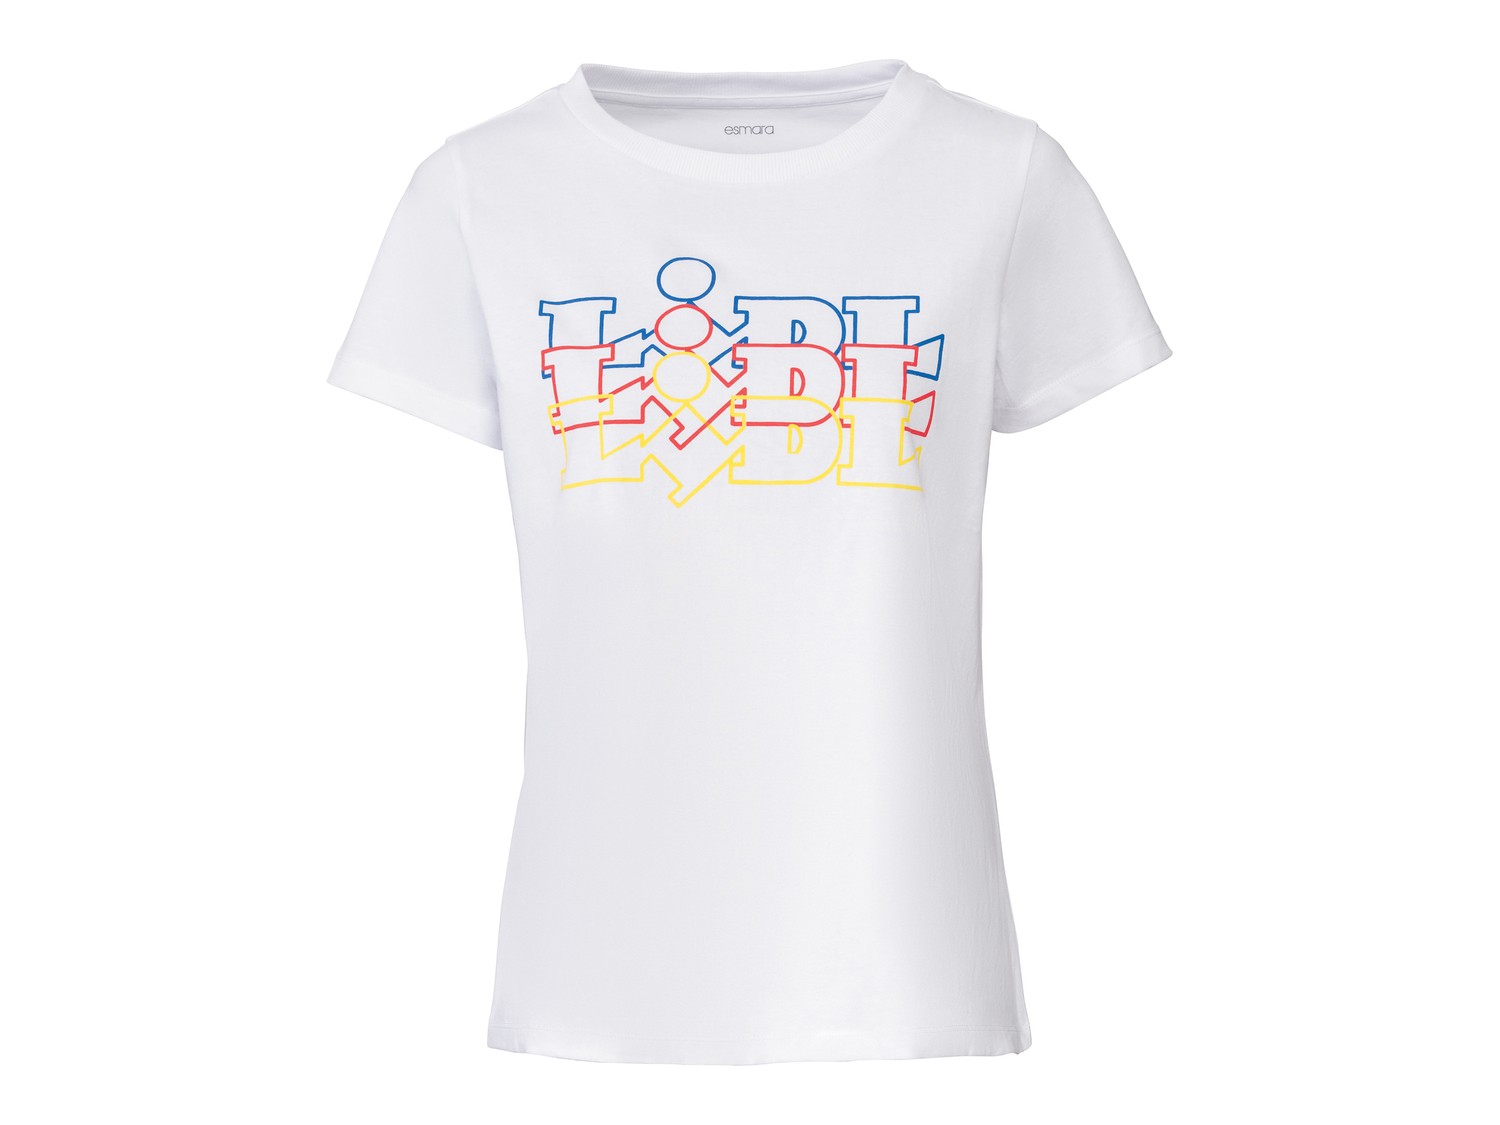 T-shirt da donna Lidl Esmara, prezzo 3.99 € 
Misure: S-L
Taglie disponibili

Caratteristiche

- ...